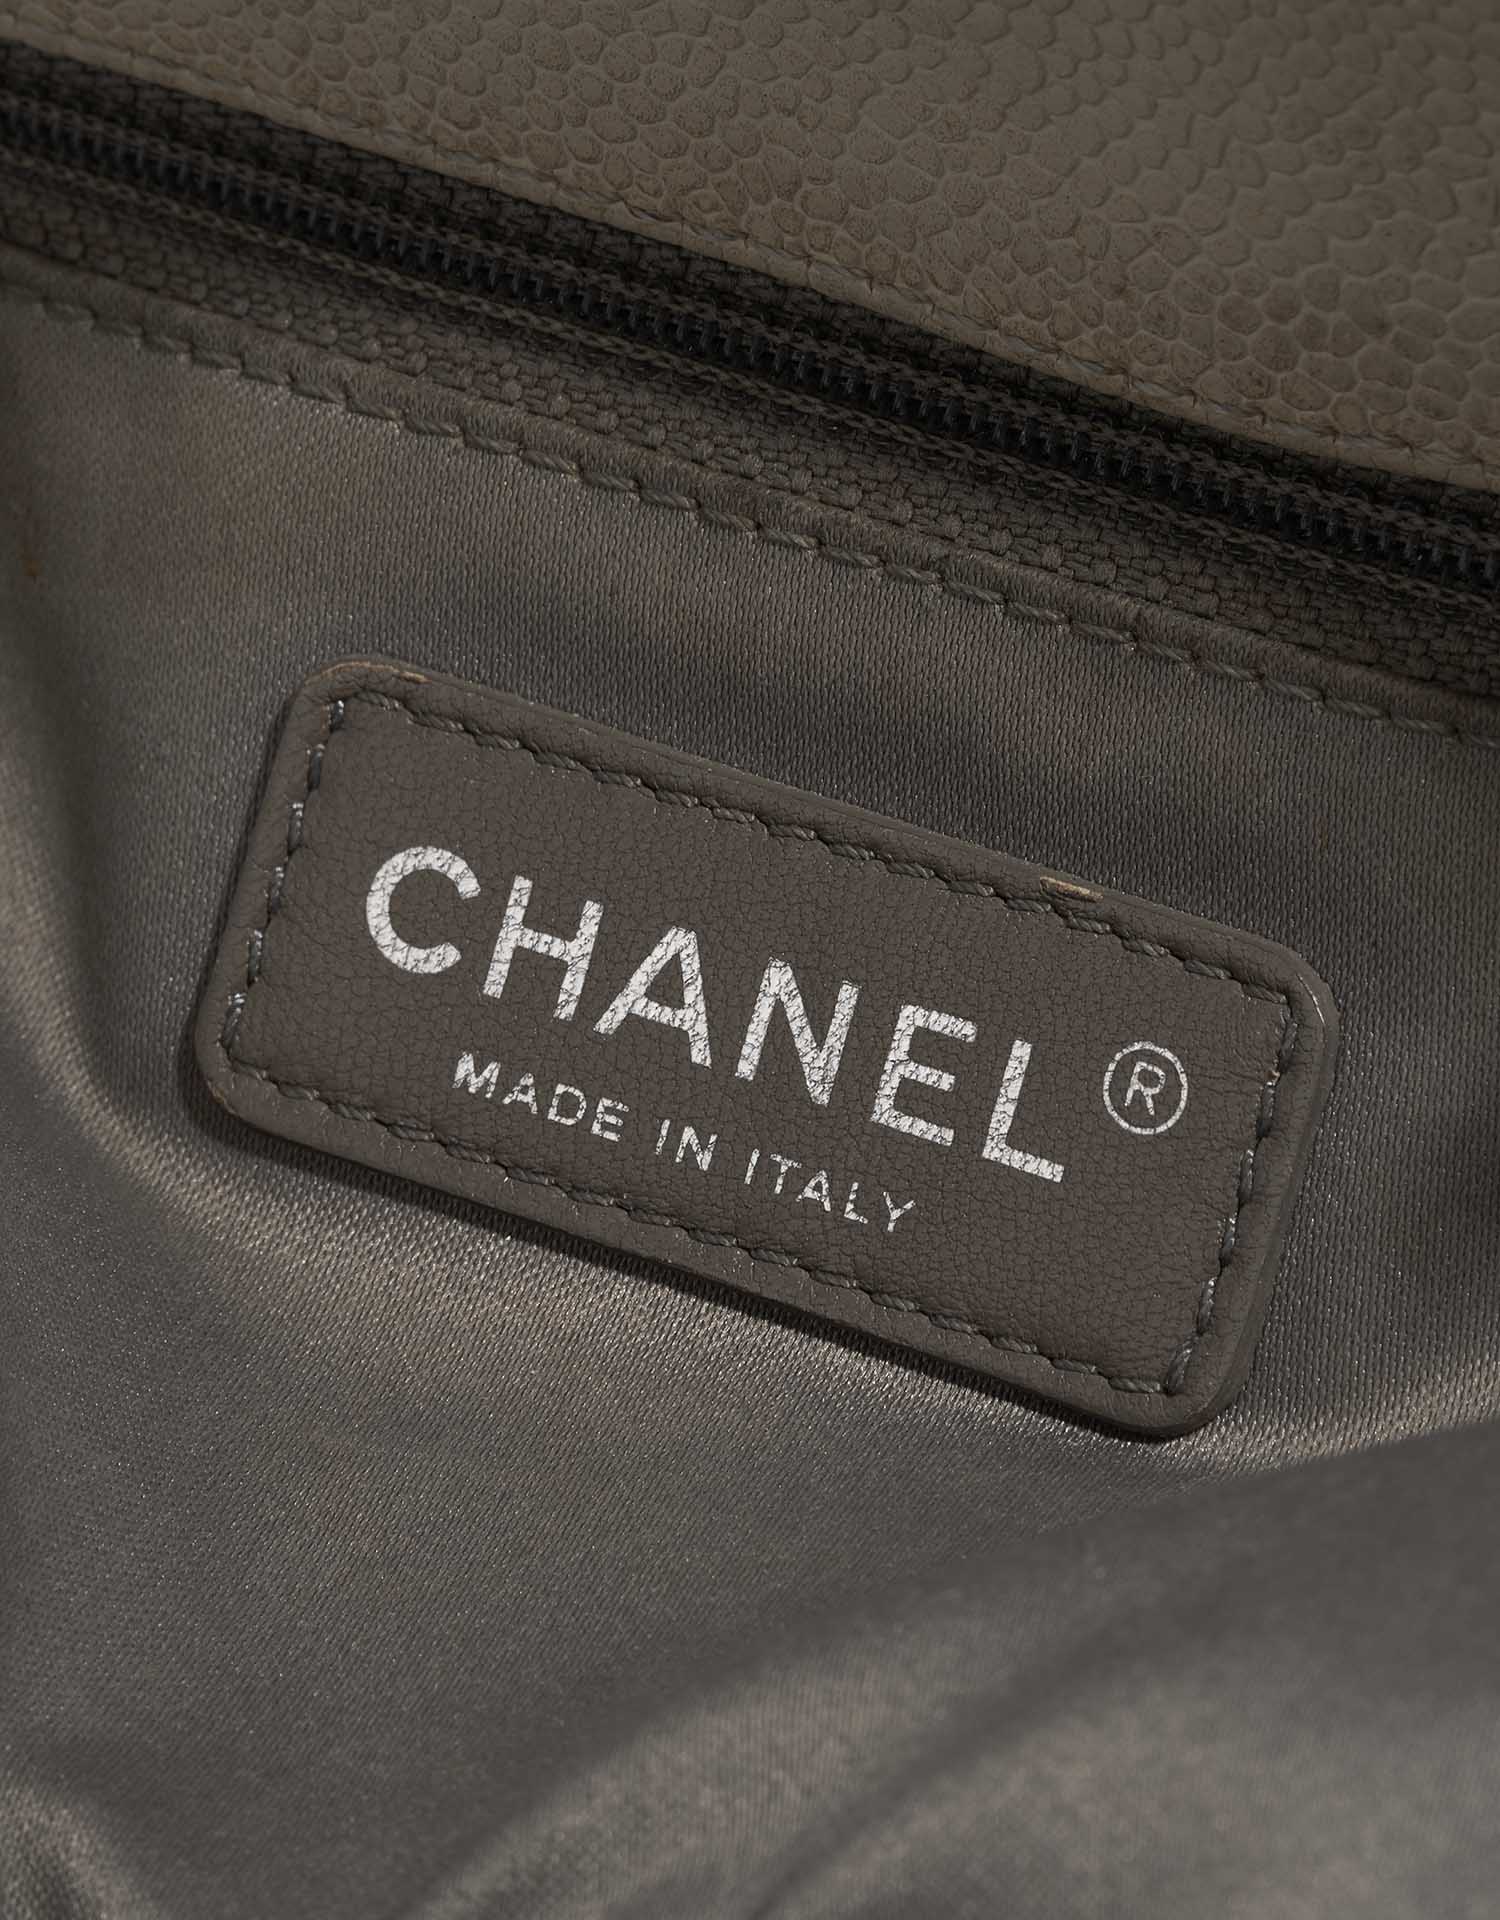 Sac Chanel d'occasion Shopping Tote GST Caviar Cream Beige Logo | Vendez votre sac de créateur sur Saclab.com